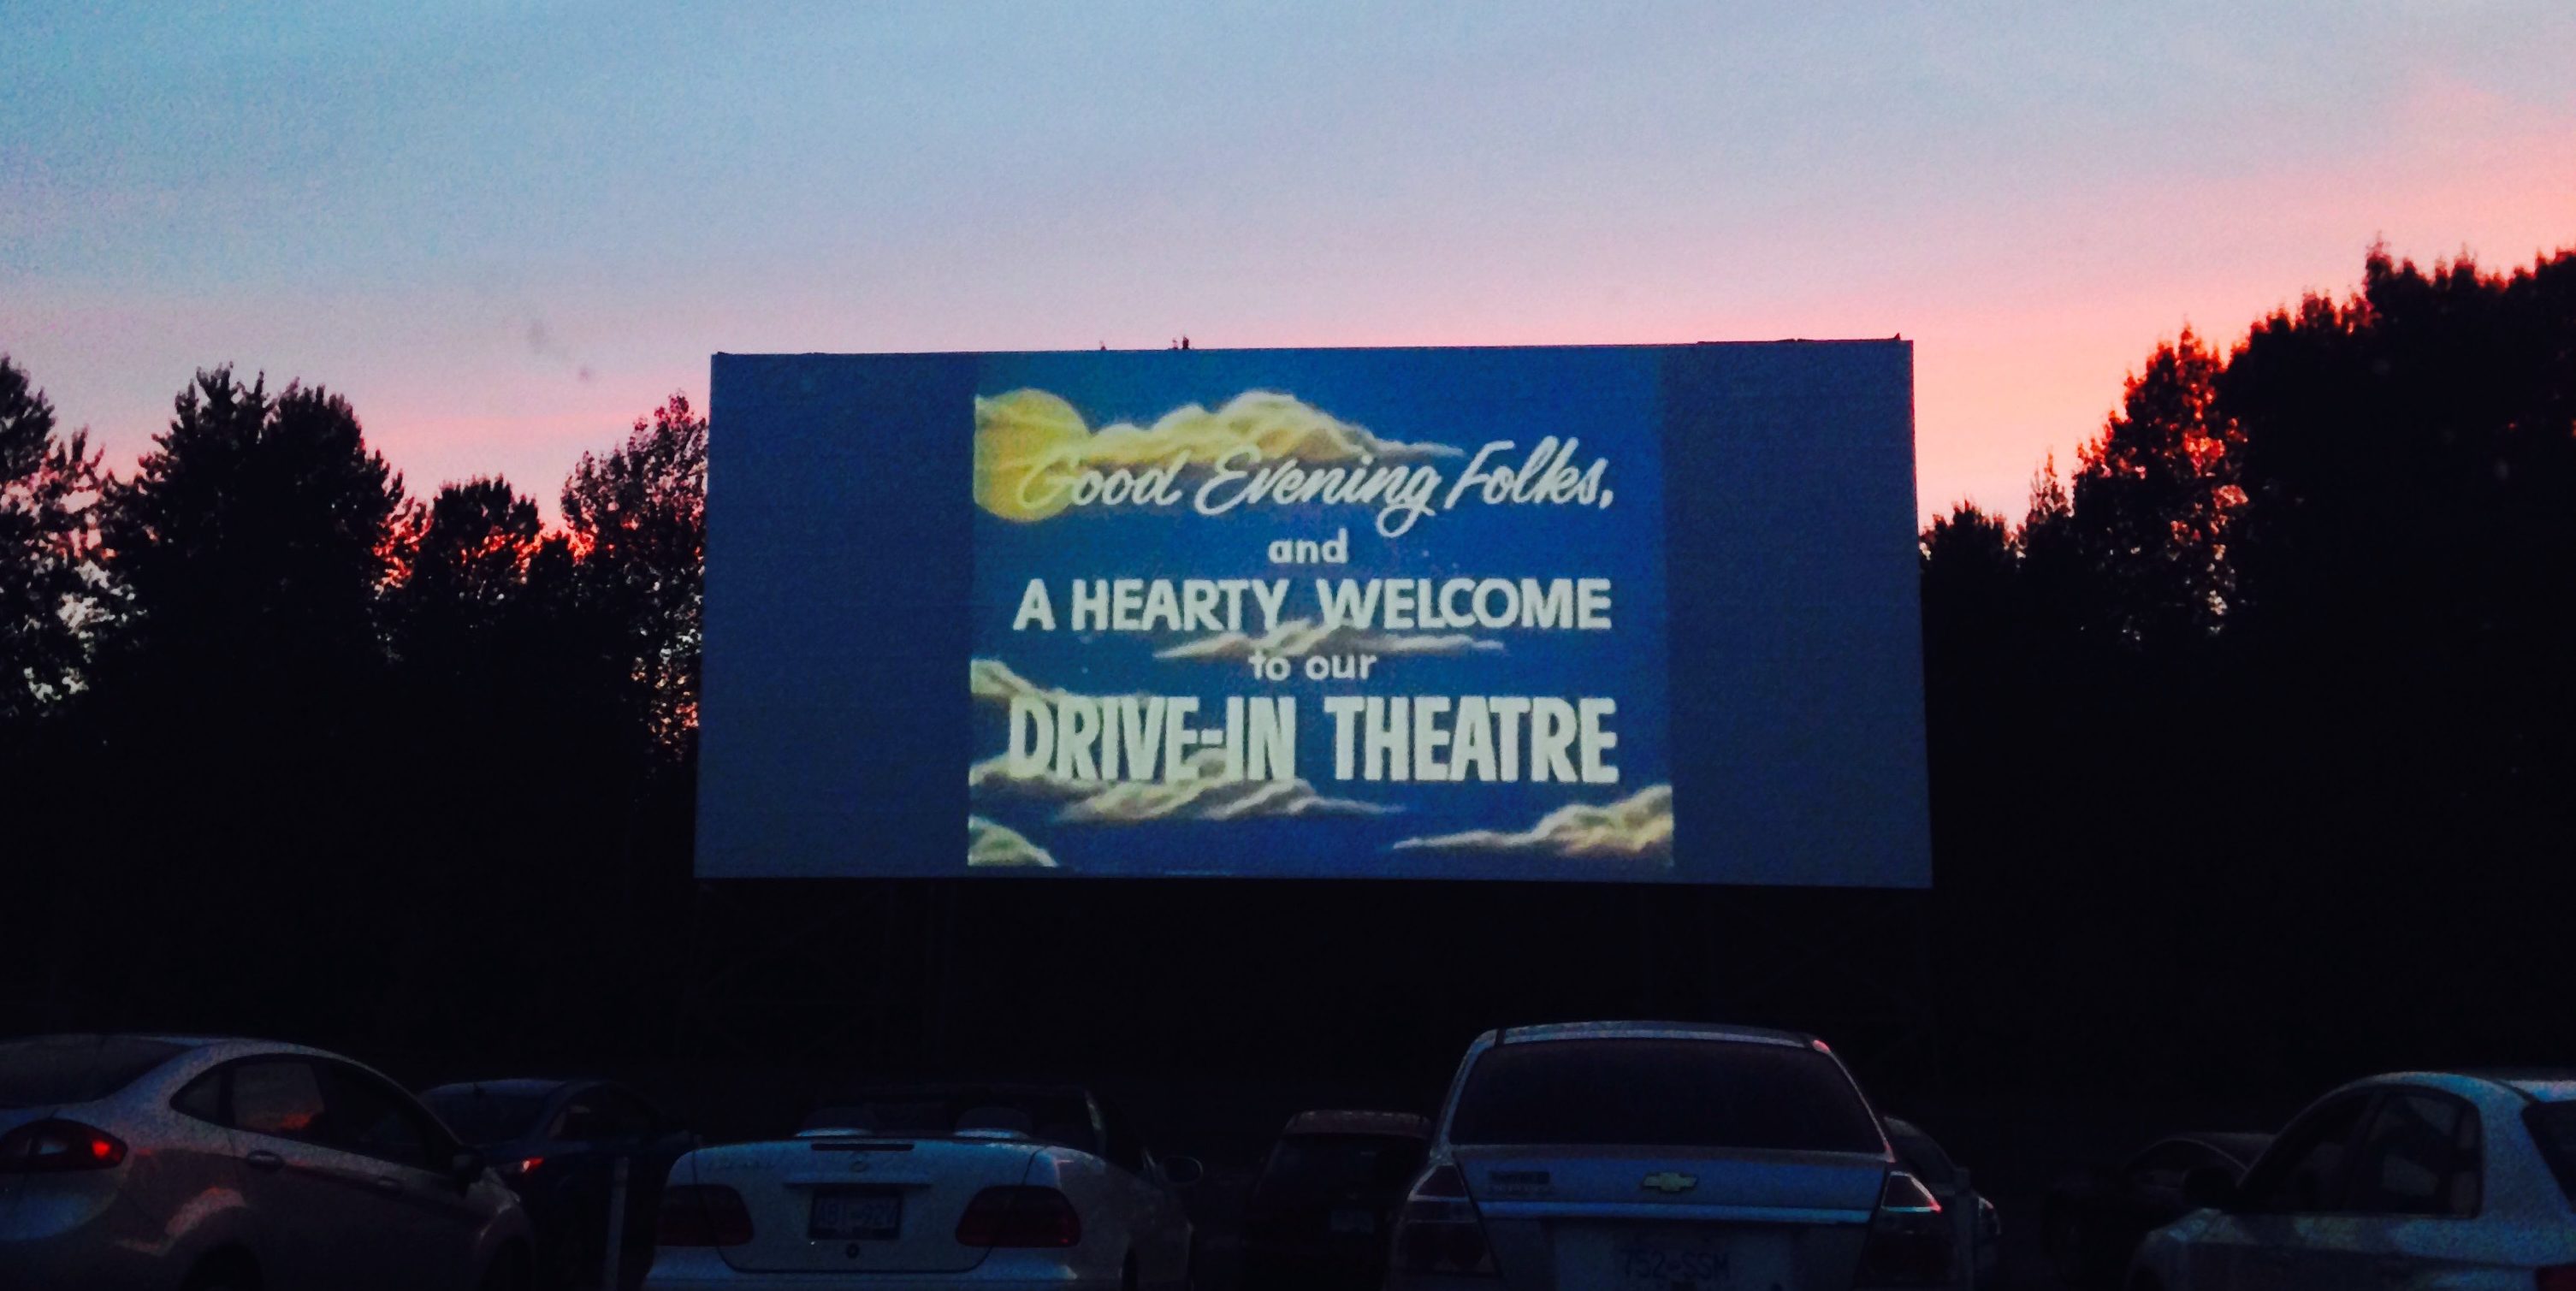 Twilight Drive-In Theatre